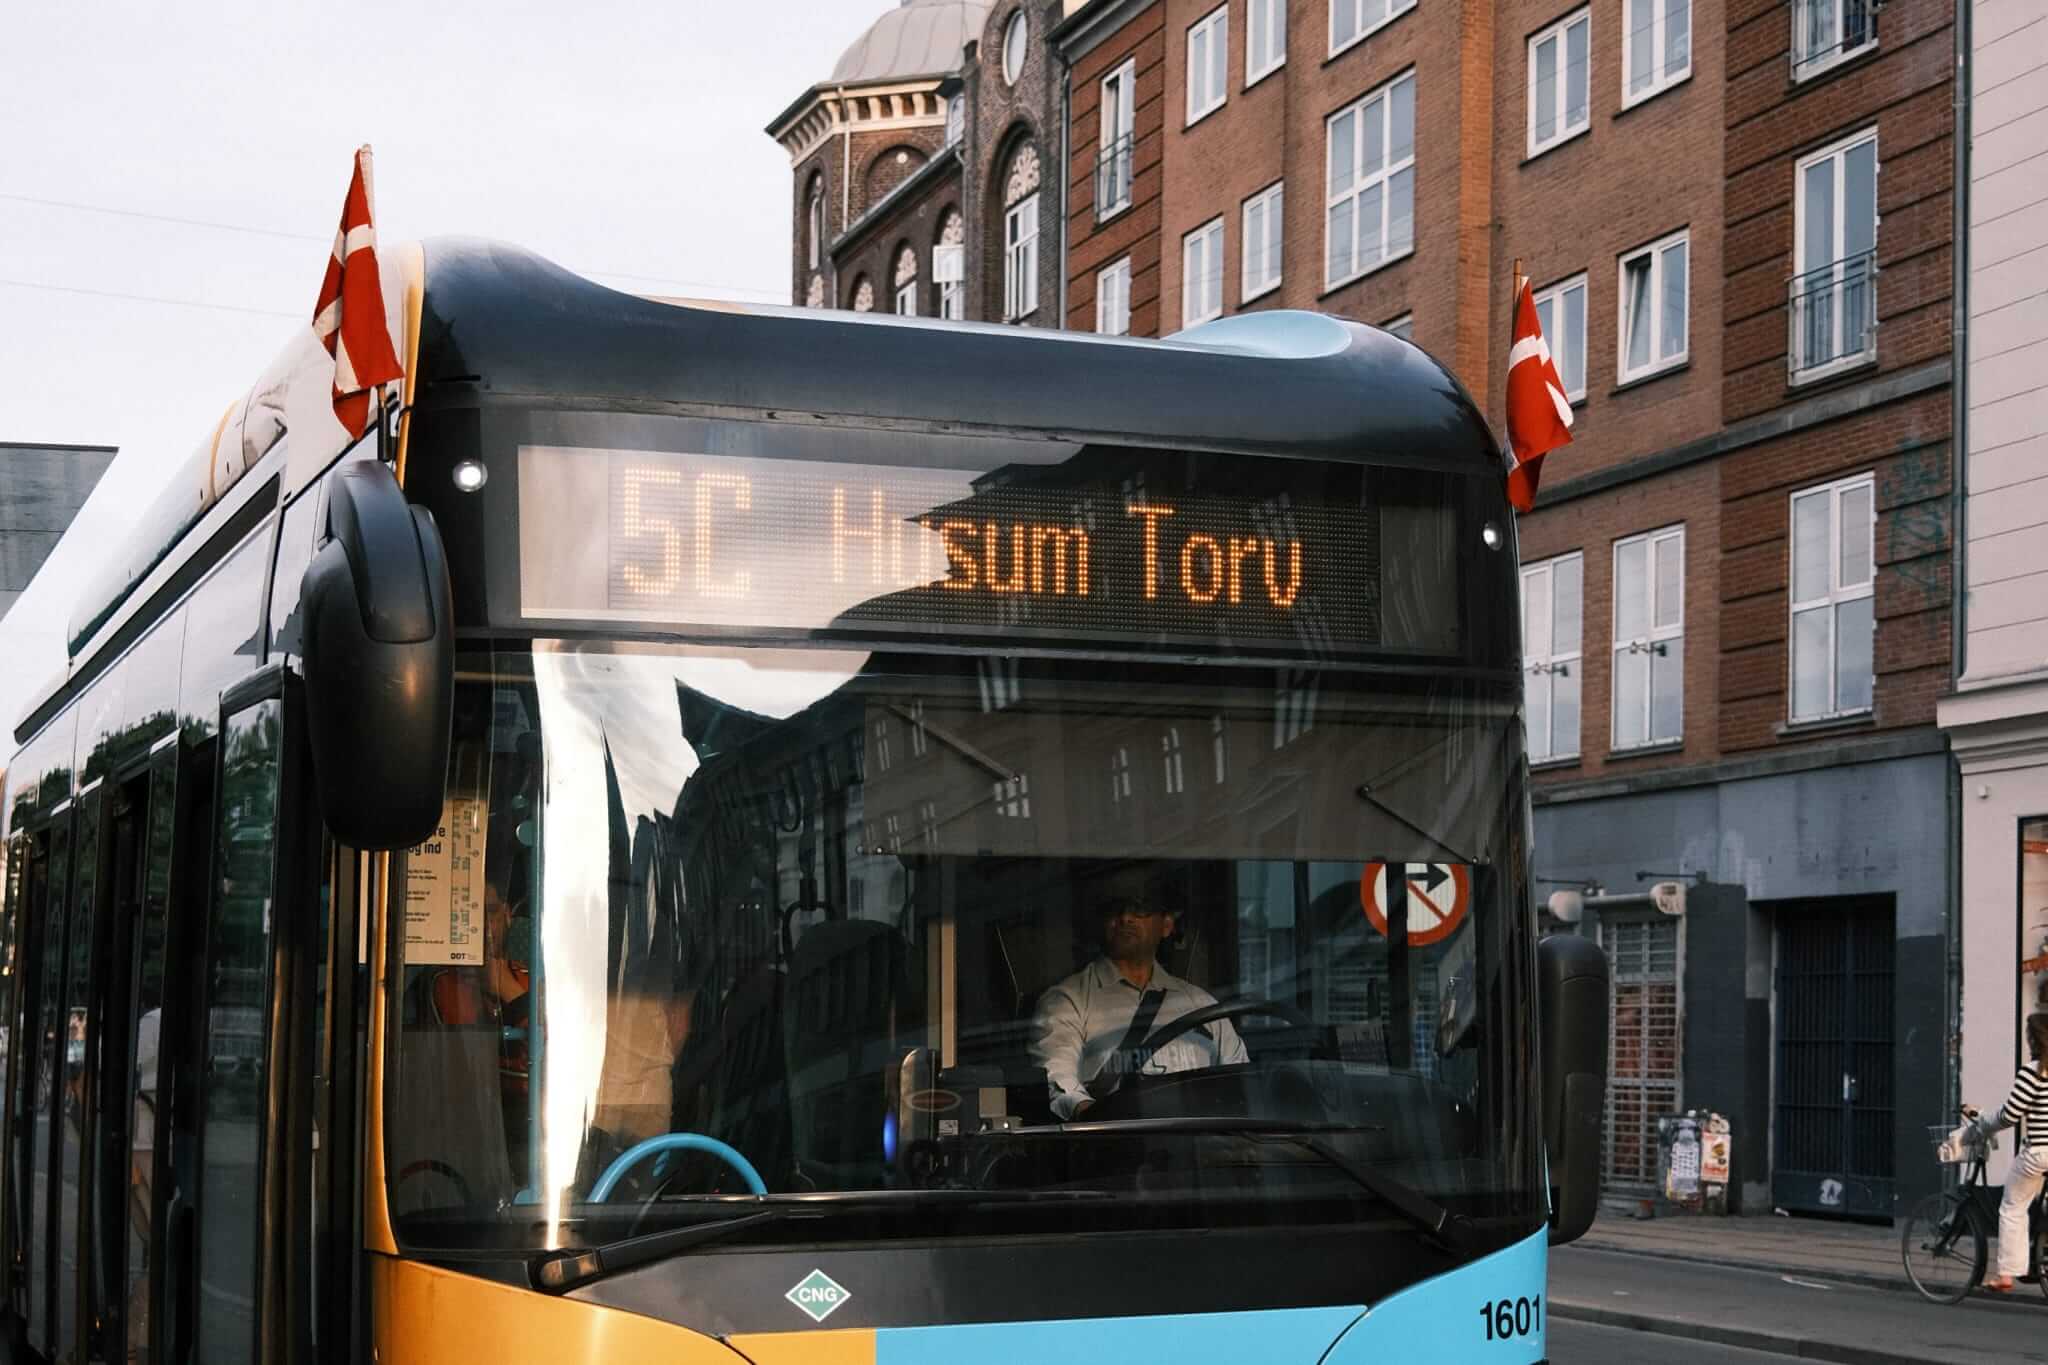 Adding buses in Denmark